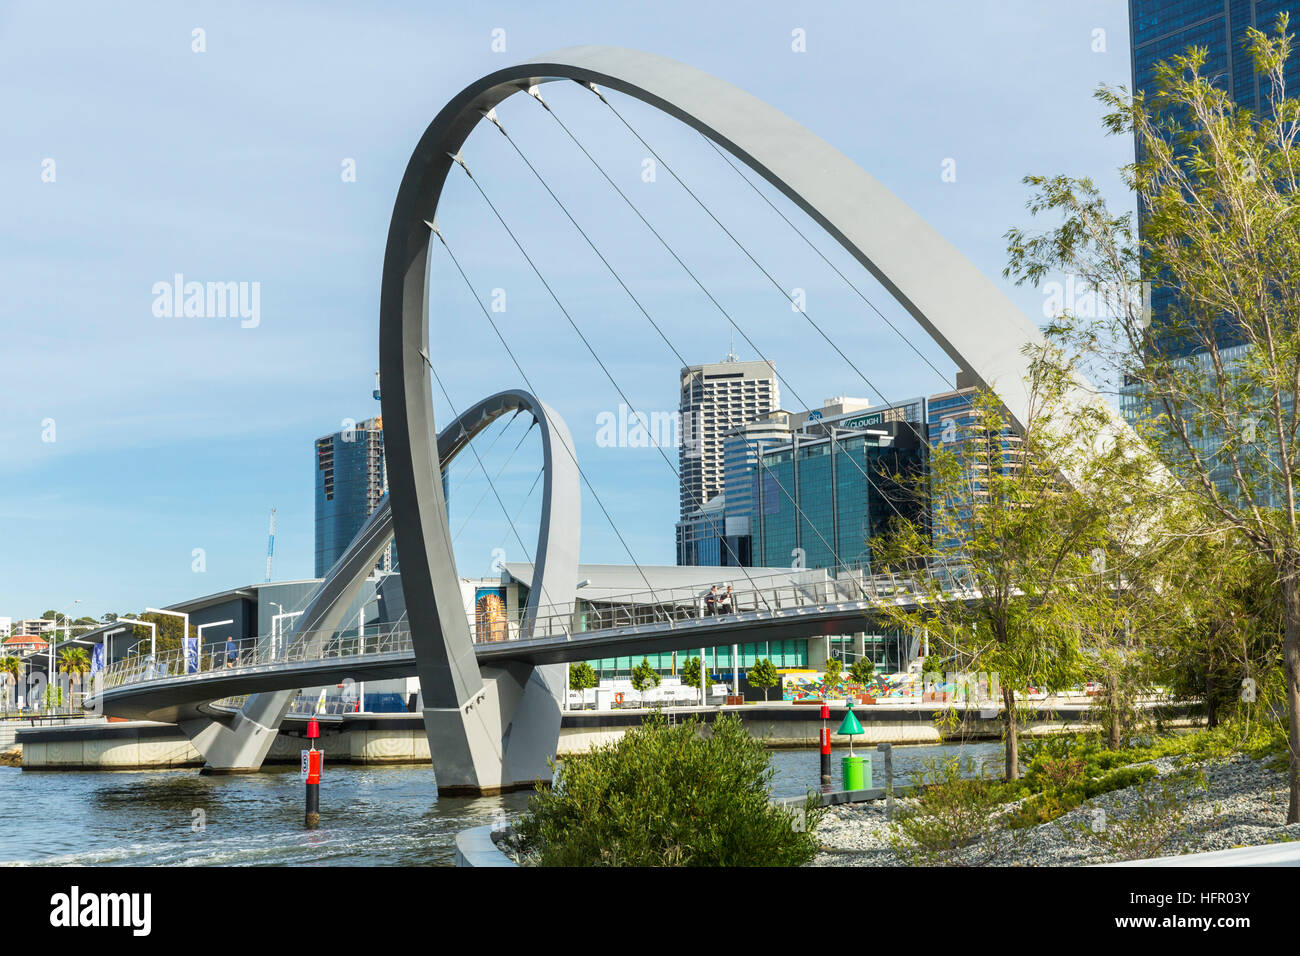 Elizabeth Kai Fußgänger Brücke am Swan River, mit der Skyline der Stadt darüber hinaus, Perth, Western Australia, Australien Stockfoto